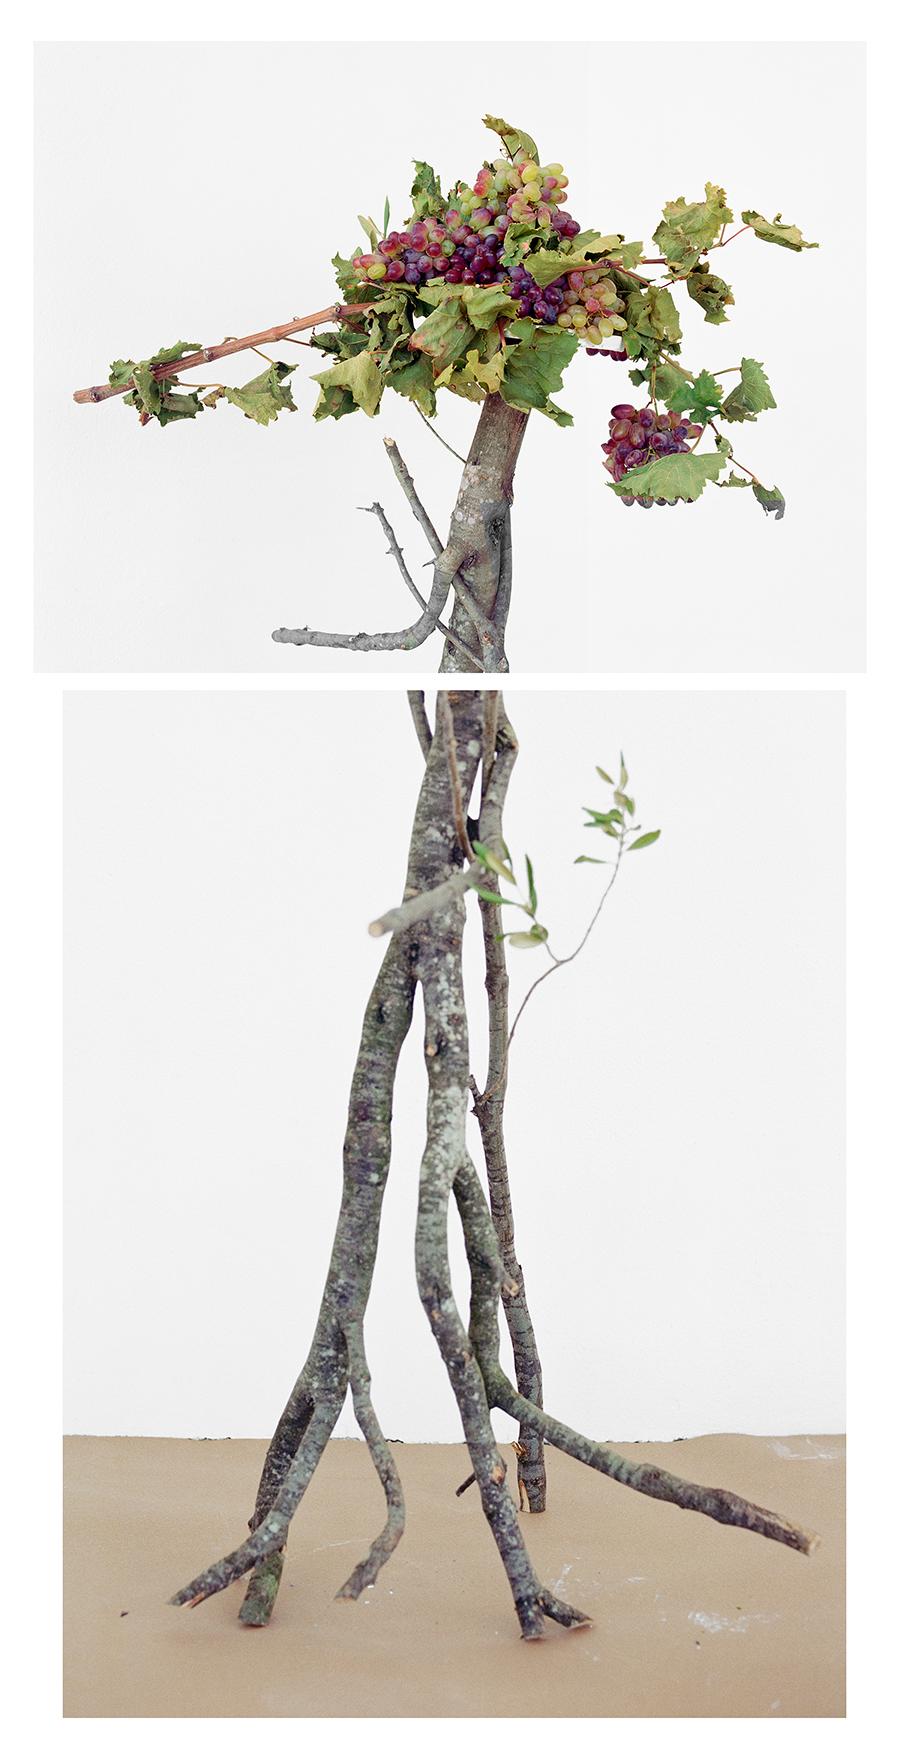 Still-Life Photograph David Halliday - Walking Grapes : Photographie de nature morte figurative de raisins et de branches